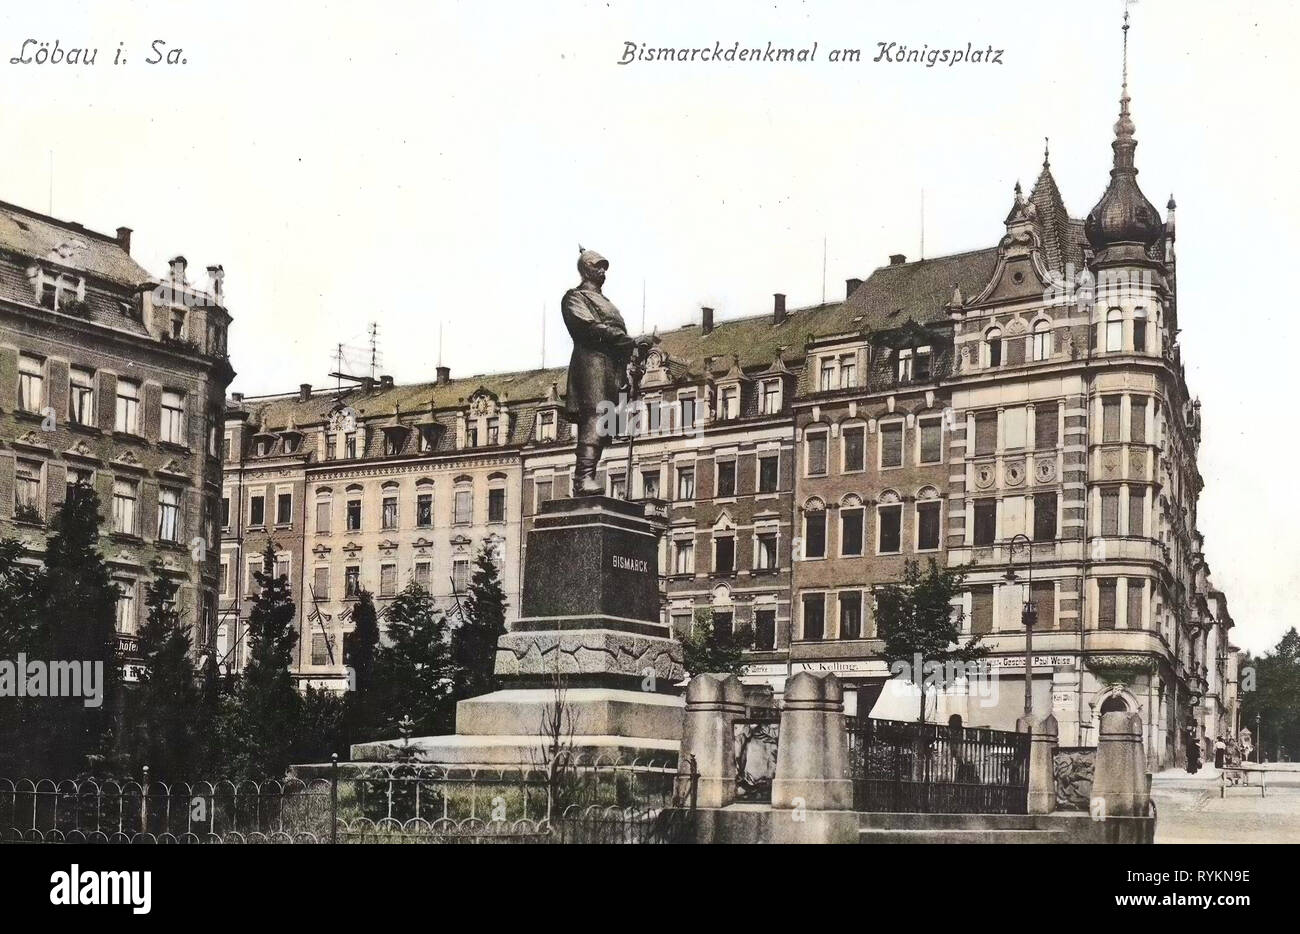 Monuments and memorials to Otto von Bismarck, Georg Meyer-Steglitz, Buildings in Löbau, 1912, Landkreis Görlitz, Löbau, Bismarck, Denkmal am Königsplatz, Germany Stock Photo